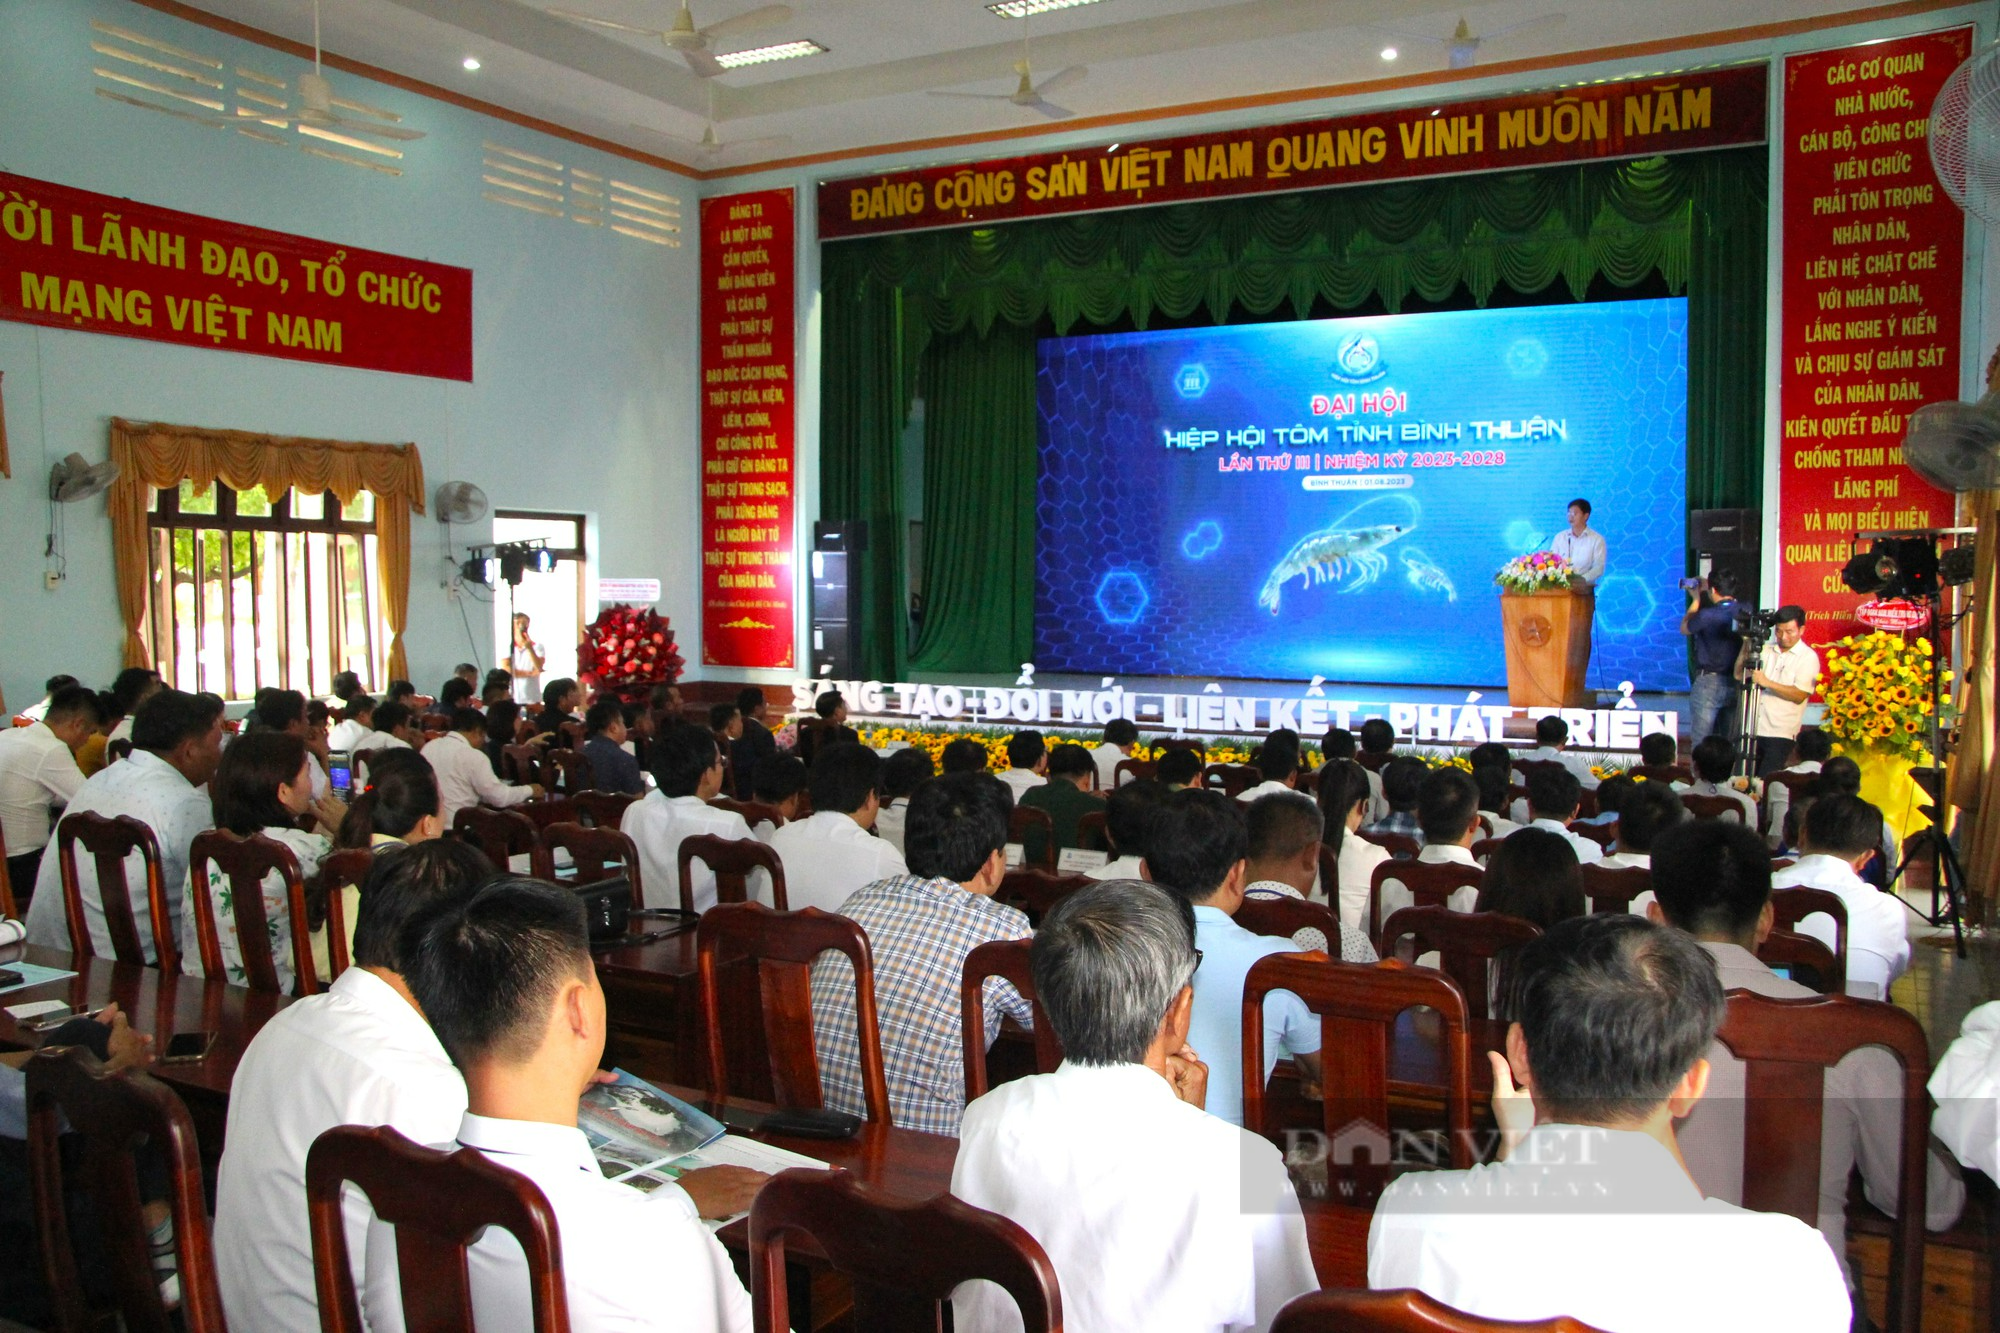 Tôm giống Bình Thuận khẳng định chất lượng, cung cấp 20% thị trường tôm giống cả nước - Ảnh 1.